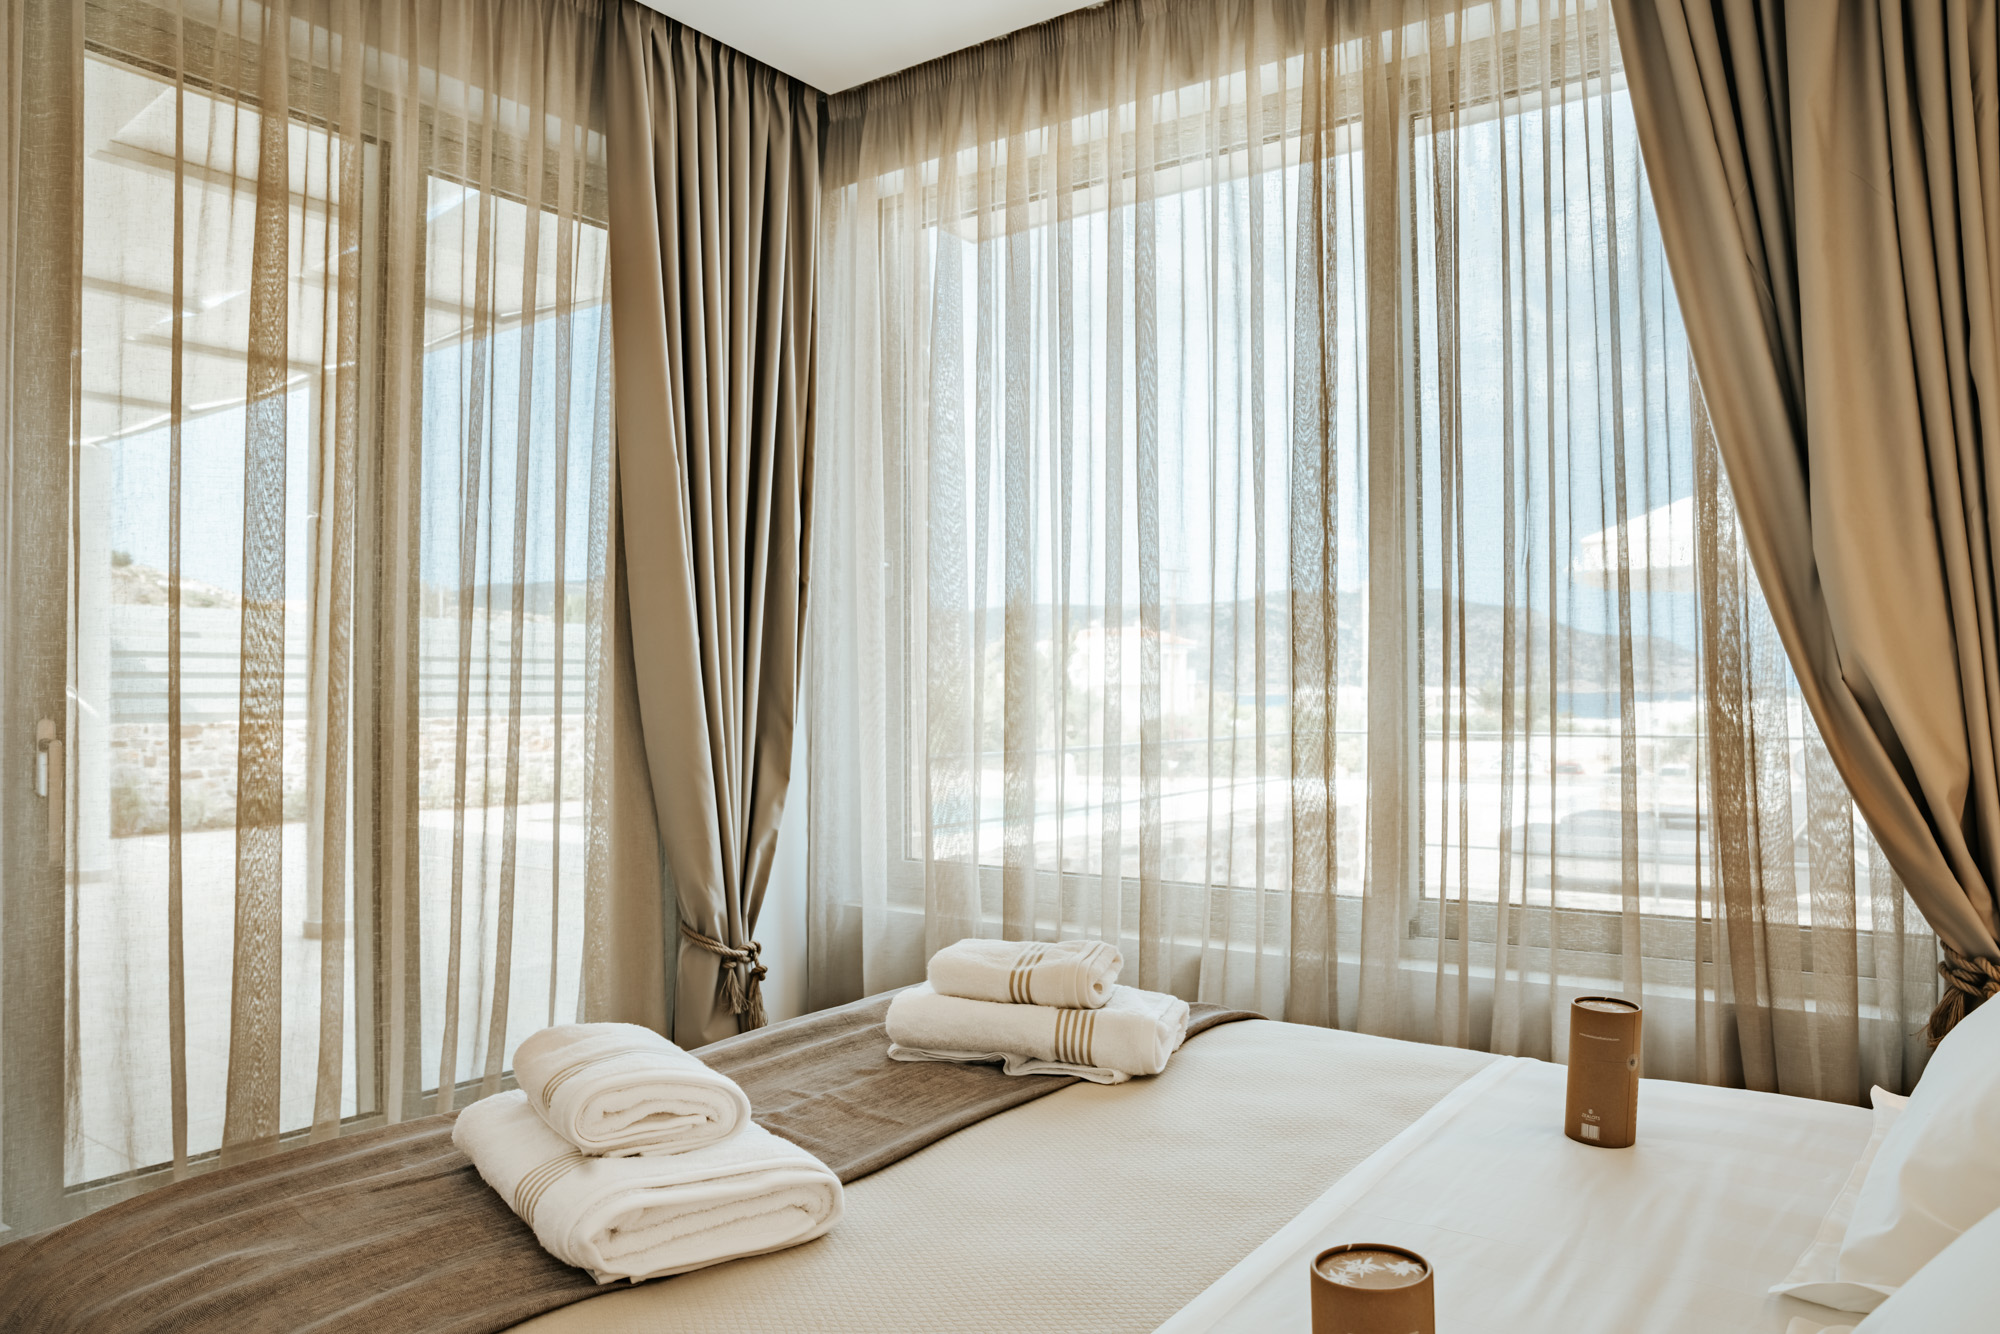 Orelia Villas room with curtains